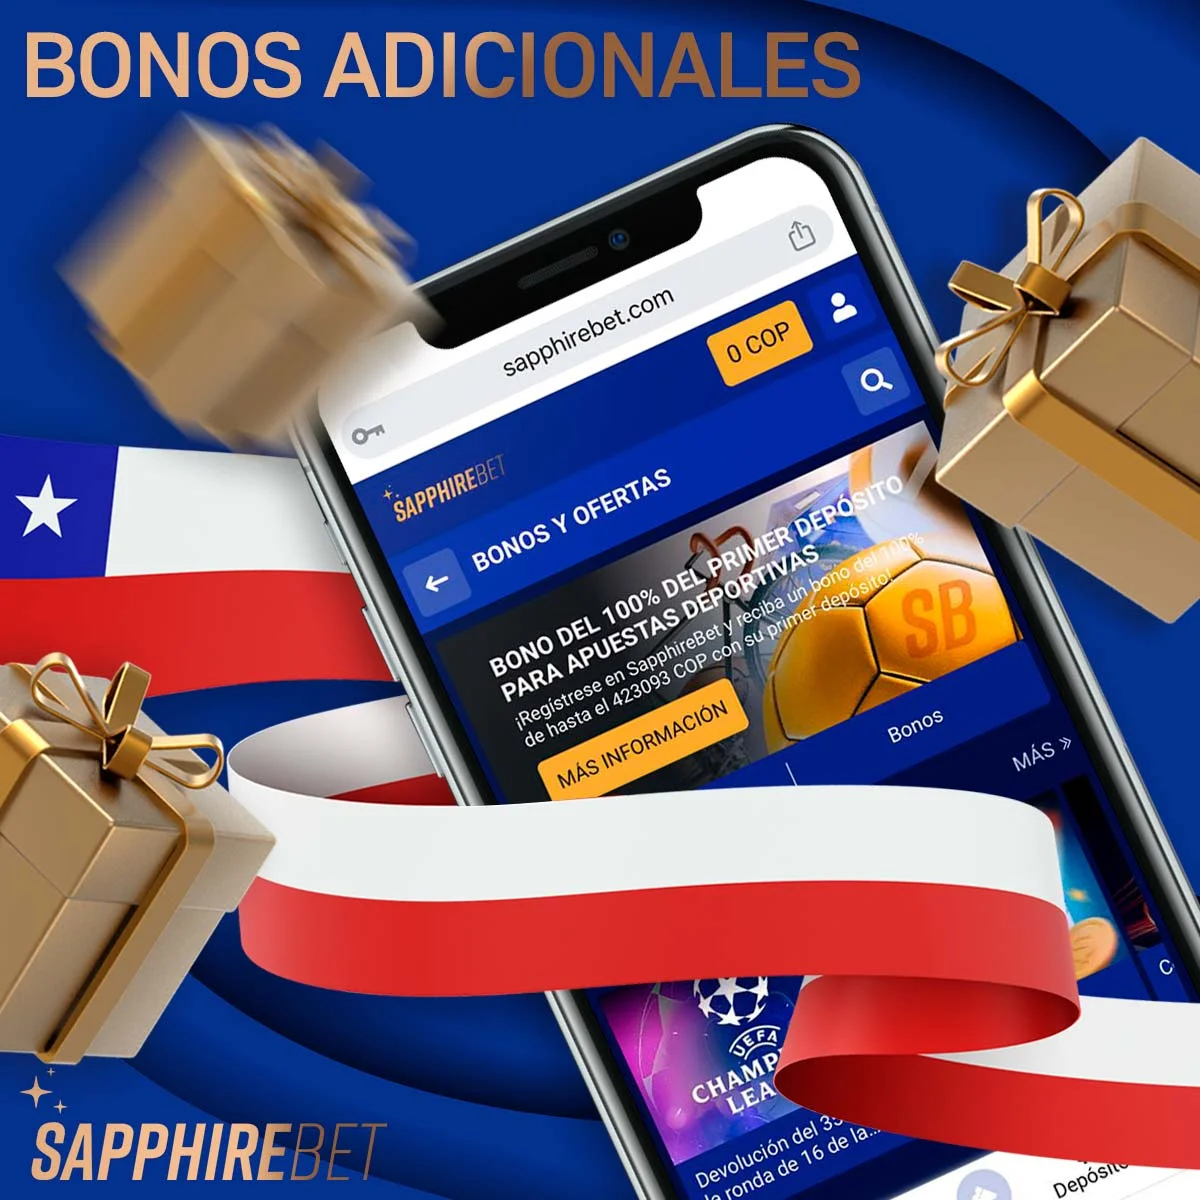 Visión general de los bonos adicionales de Sapphirebet Chile